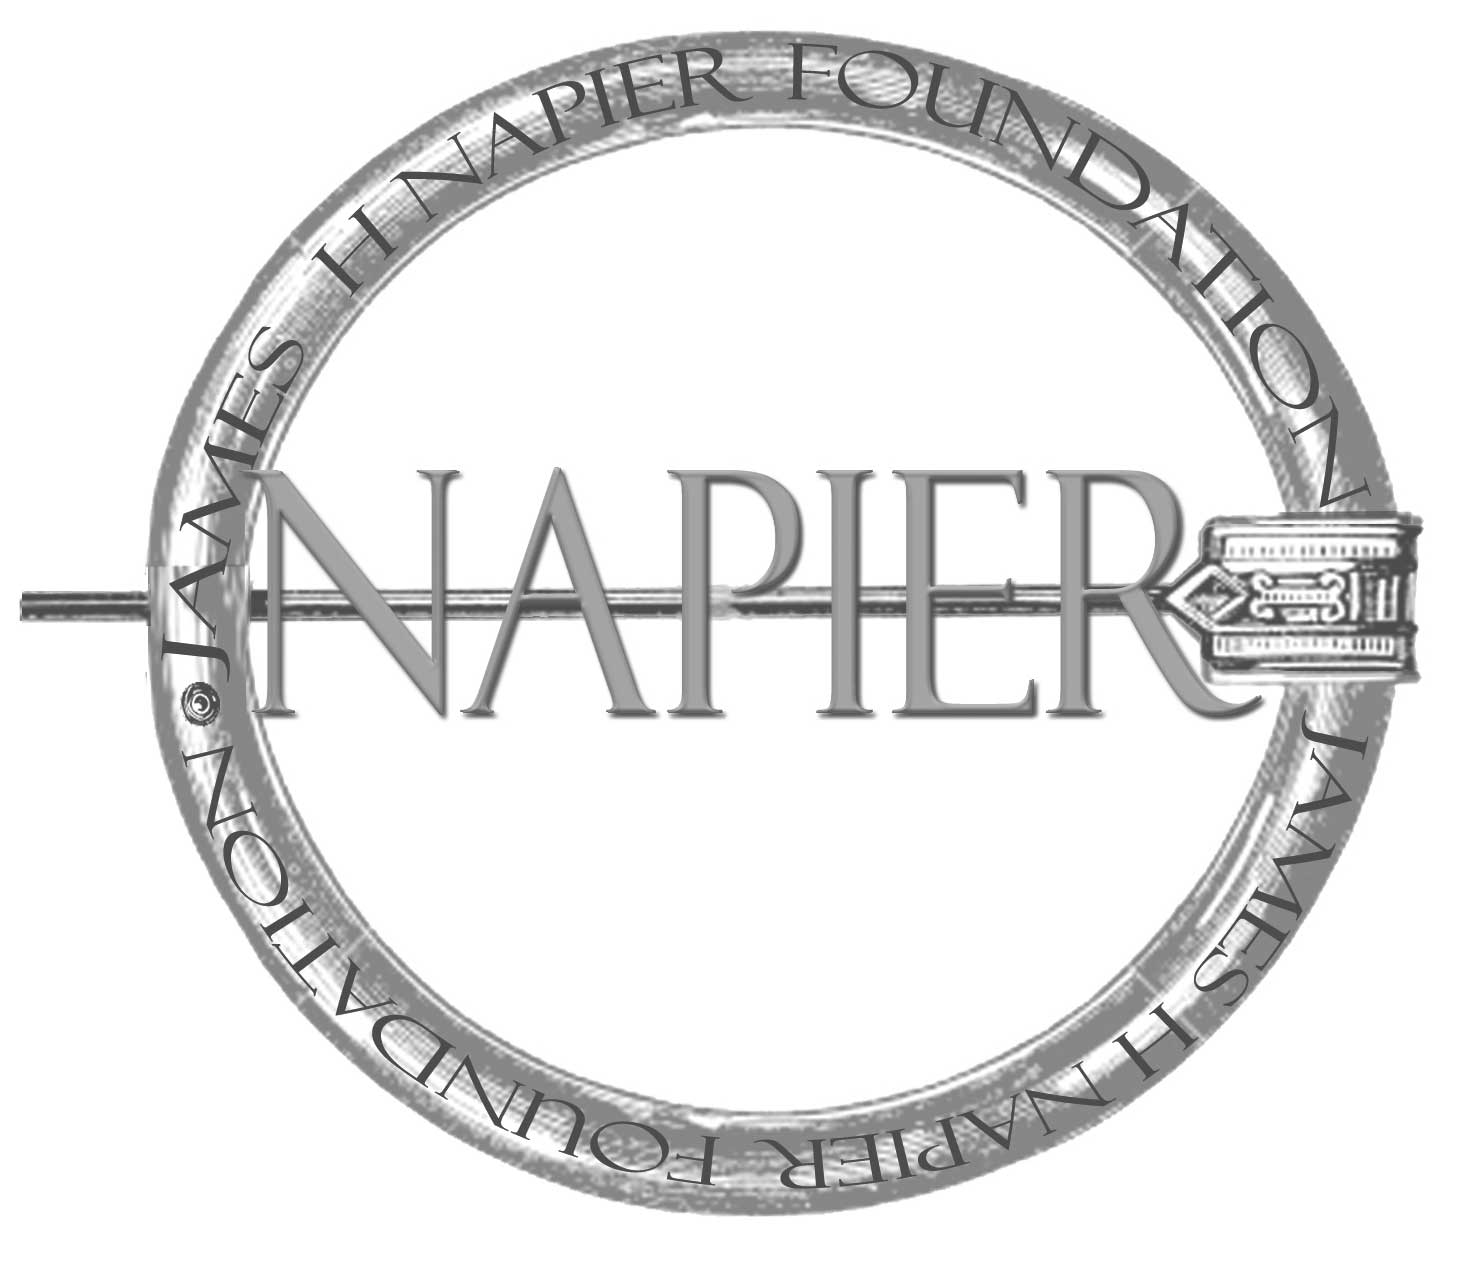 James H. Napier Foundation